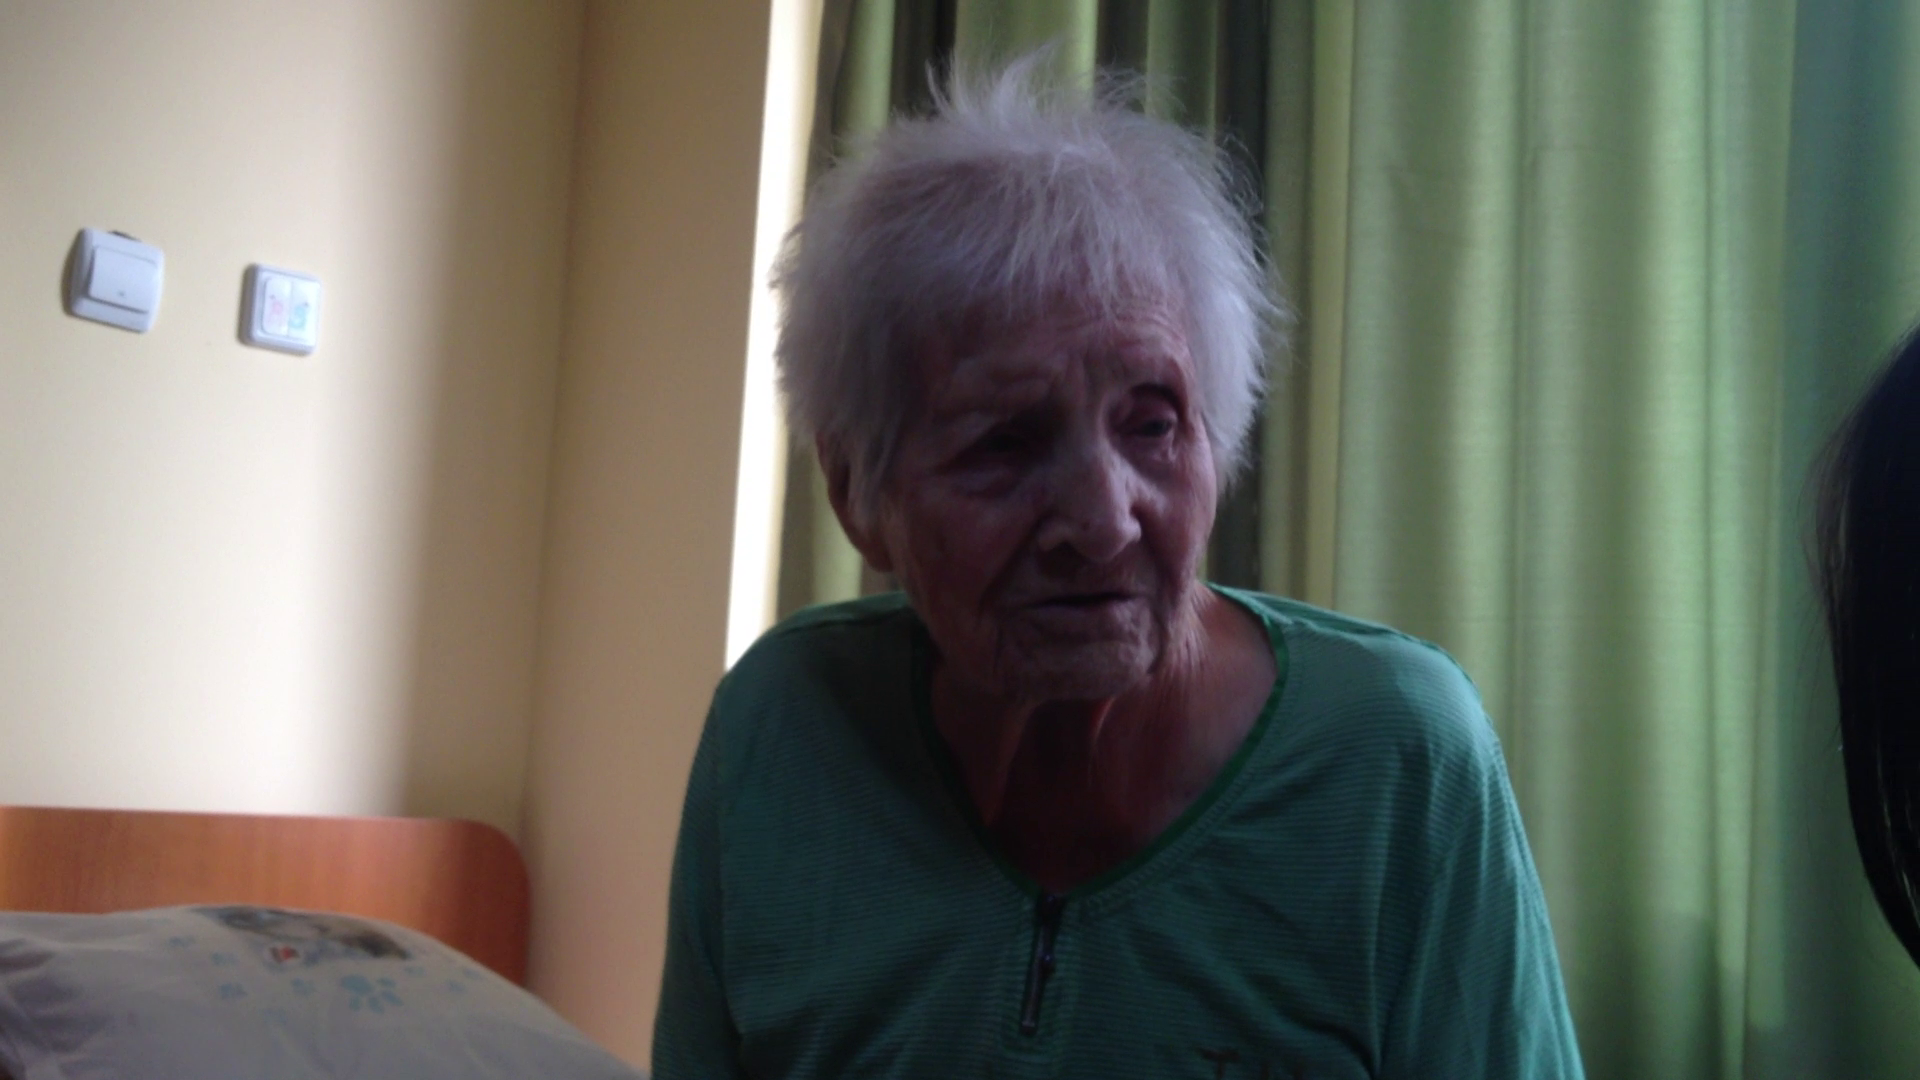 Carolina Mazilu a implinit 102 ani